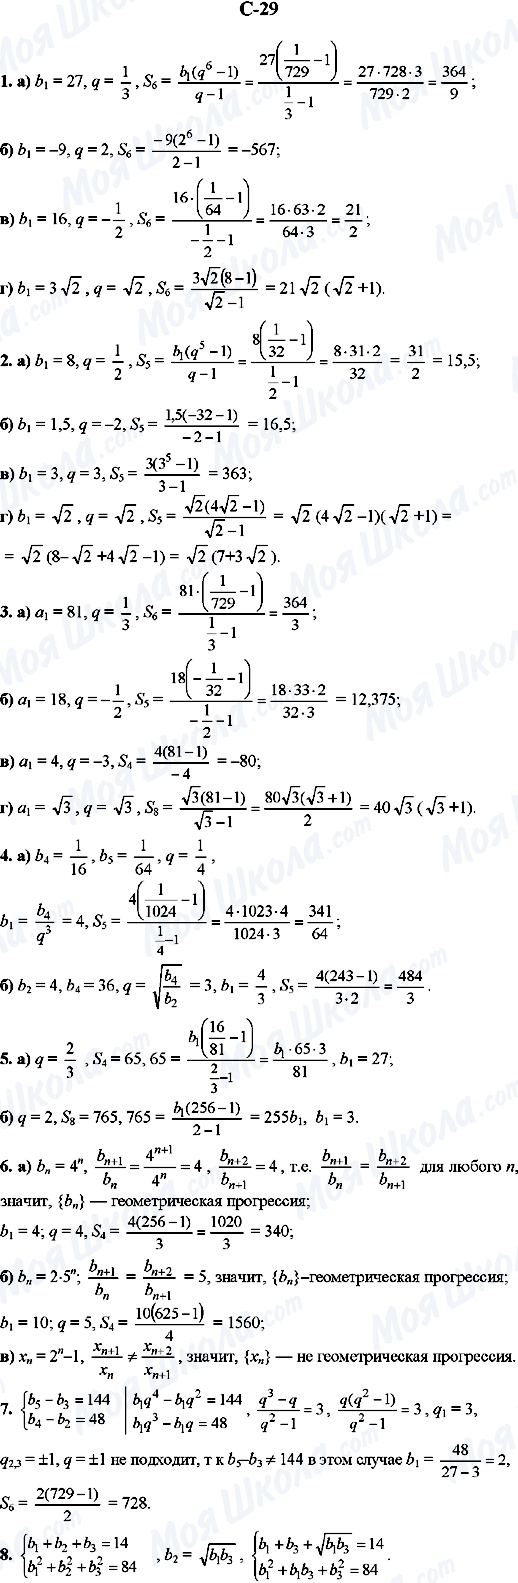 ГДЗ Алгебра 9 класс страница C-29